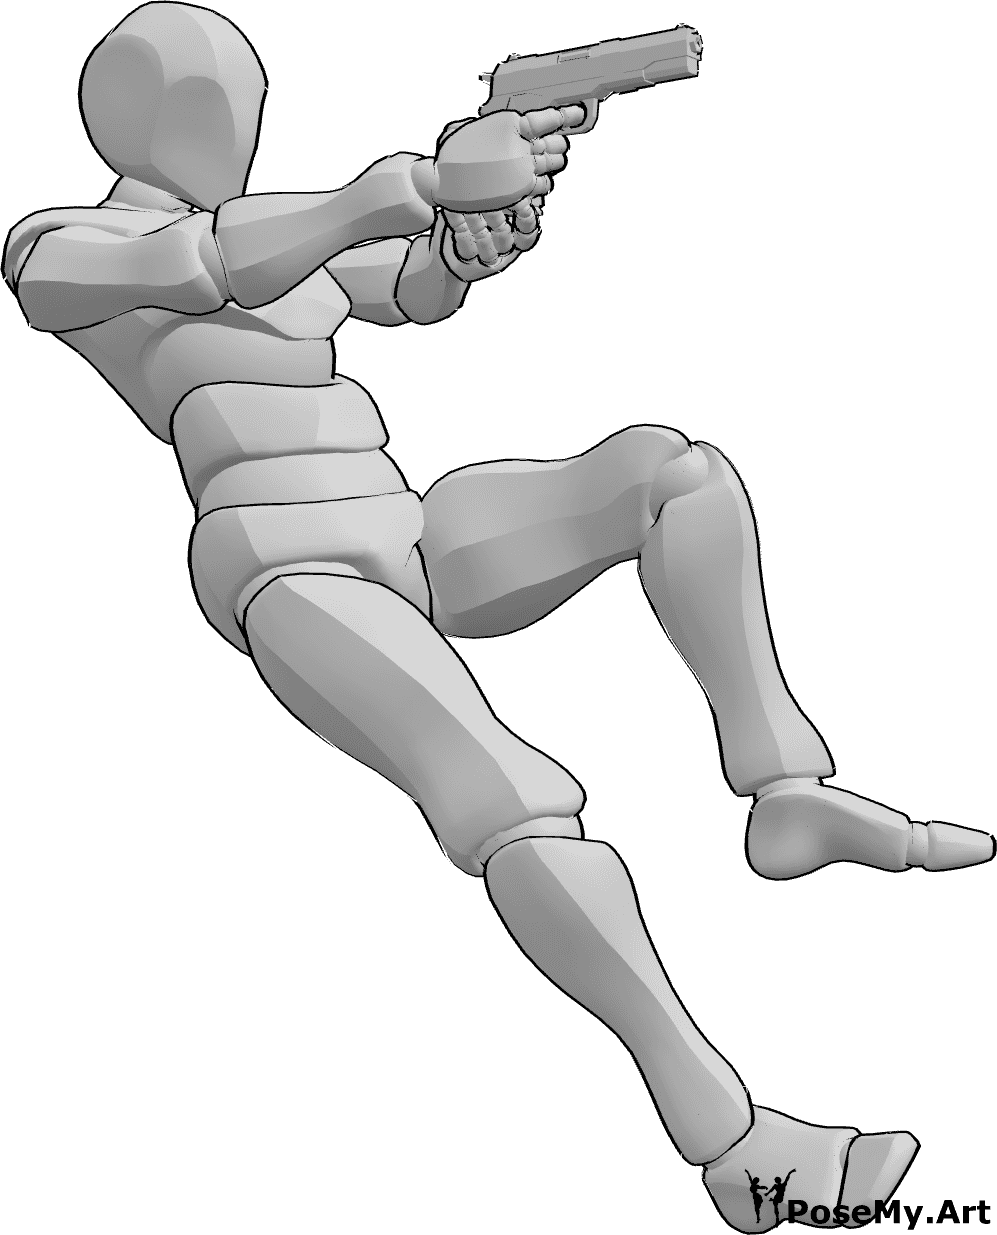 Referência de poses- Pose masculina de ação com pistola - O homem está a cair para trás enquanto aponta a pistola, segurando-a com as duas mãos